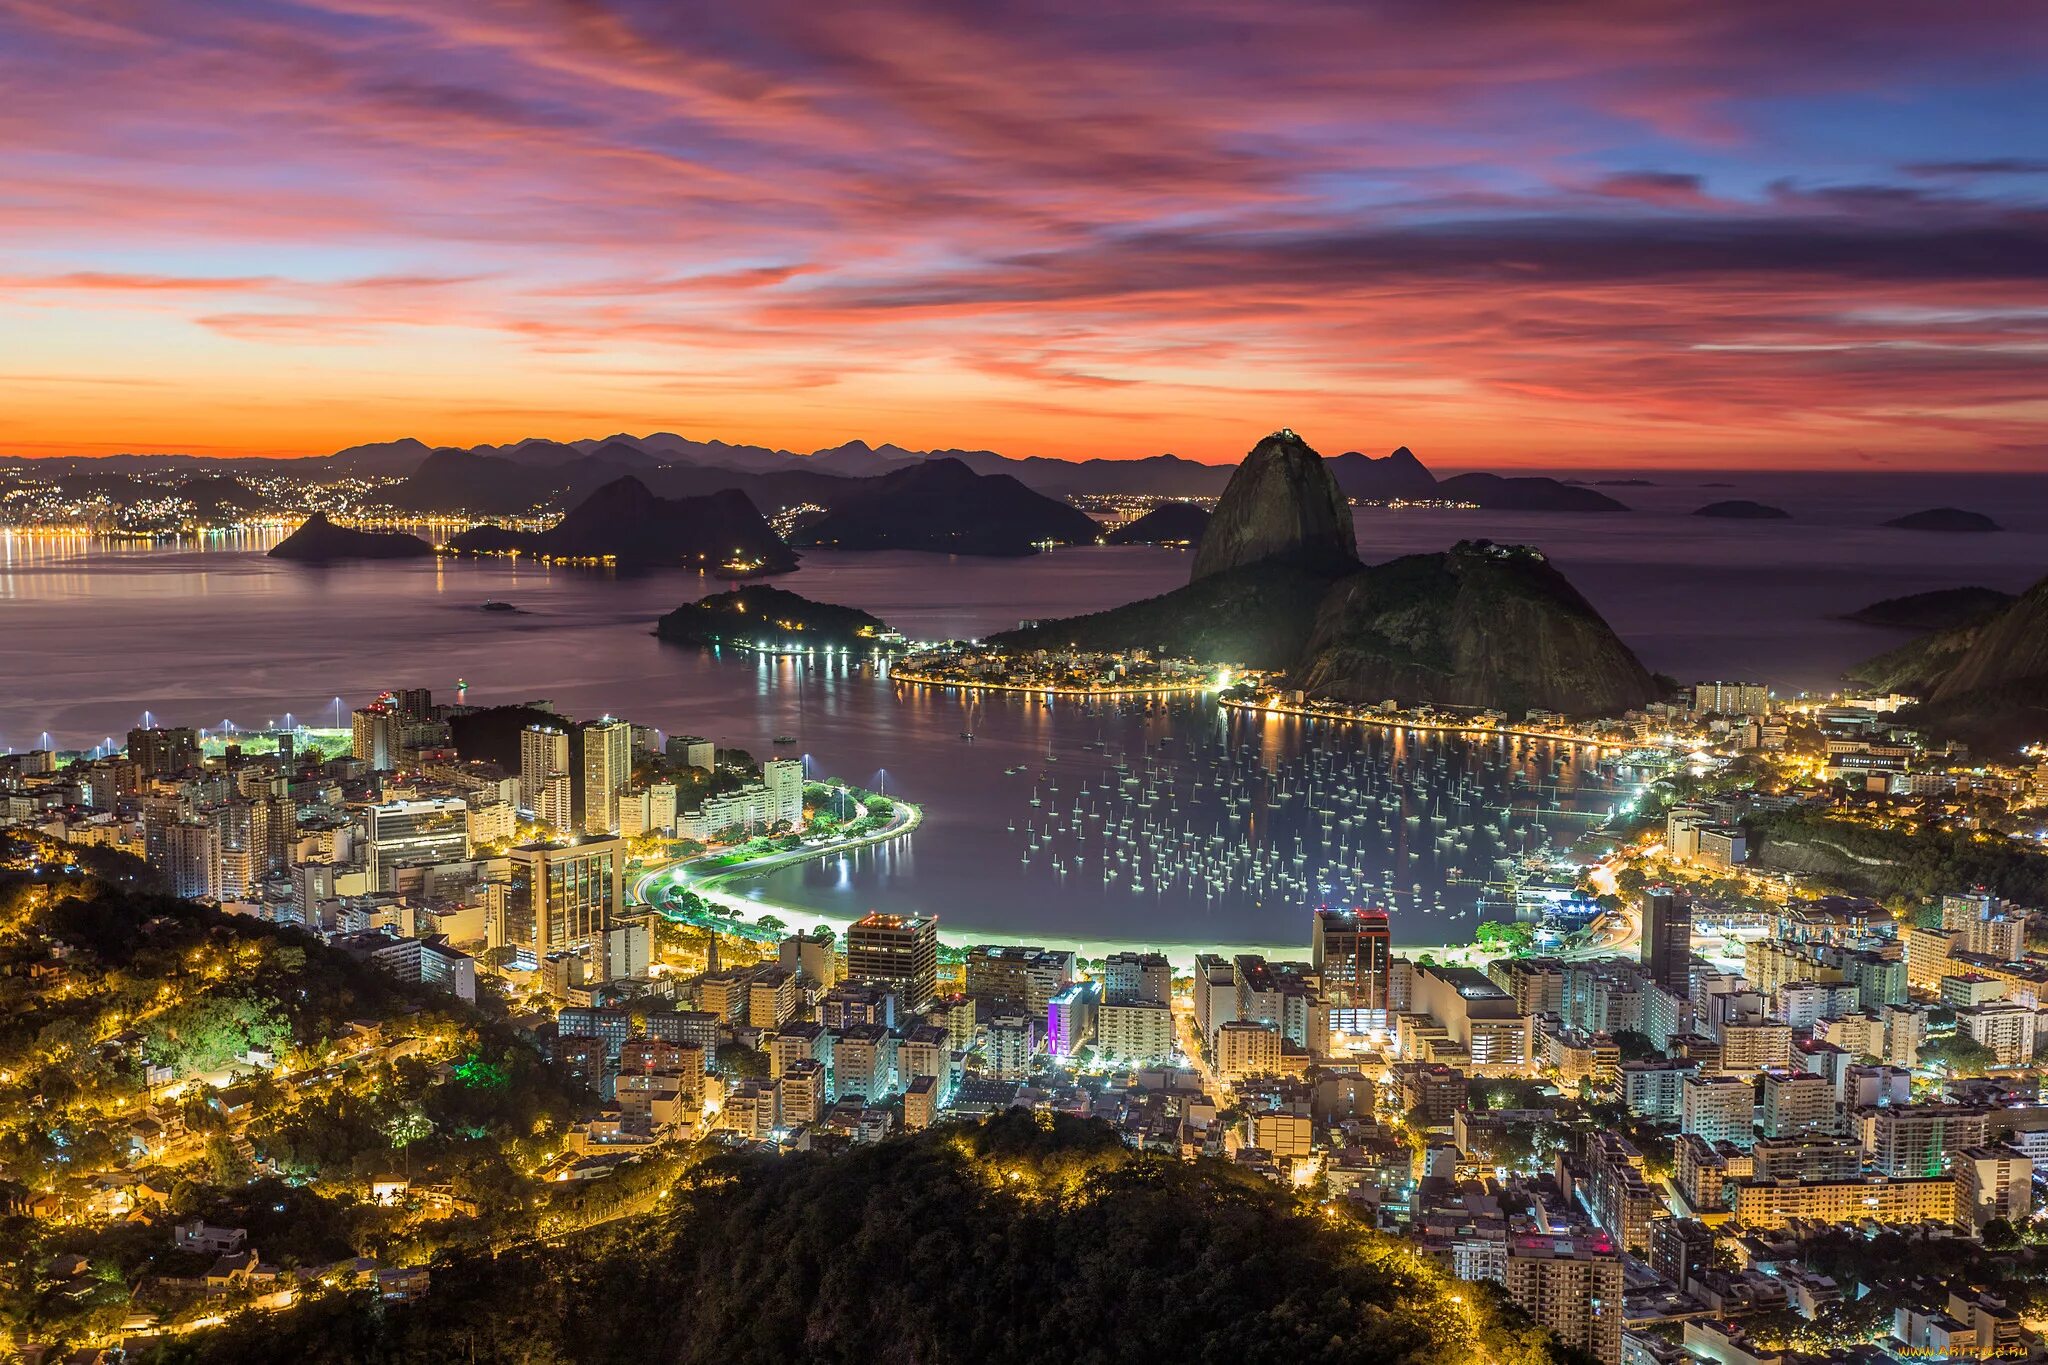 Country brazil. Бразилия Рио де Жанейро. Рио-де-Жанейро столица Бразилии. Панорама Рио де Жанейро. Бразилия Рио дажанейро.